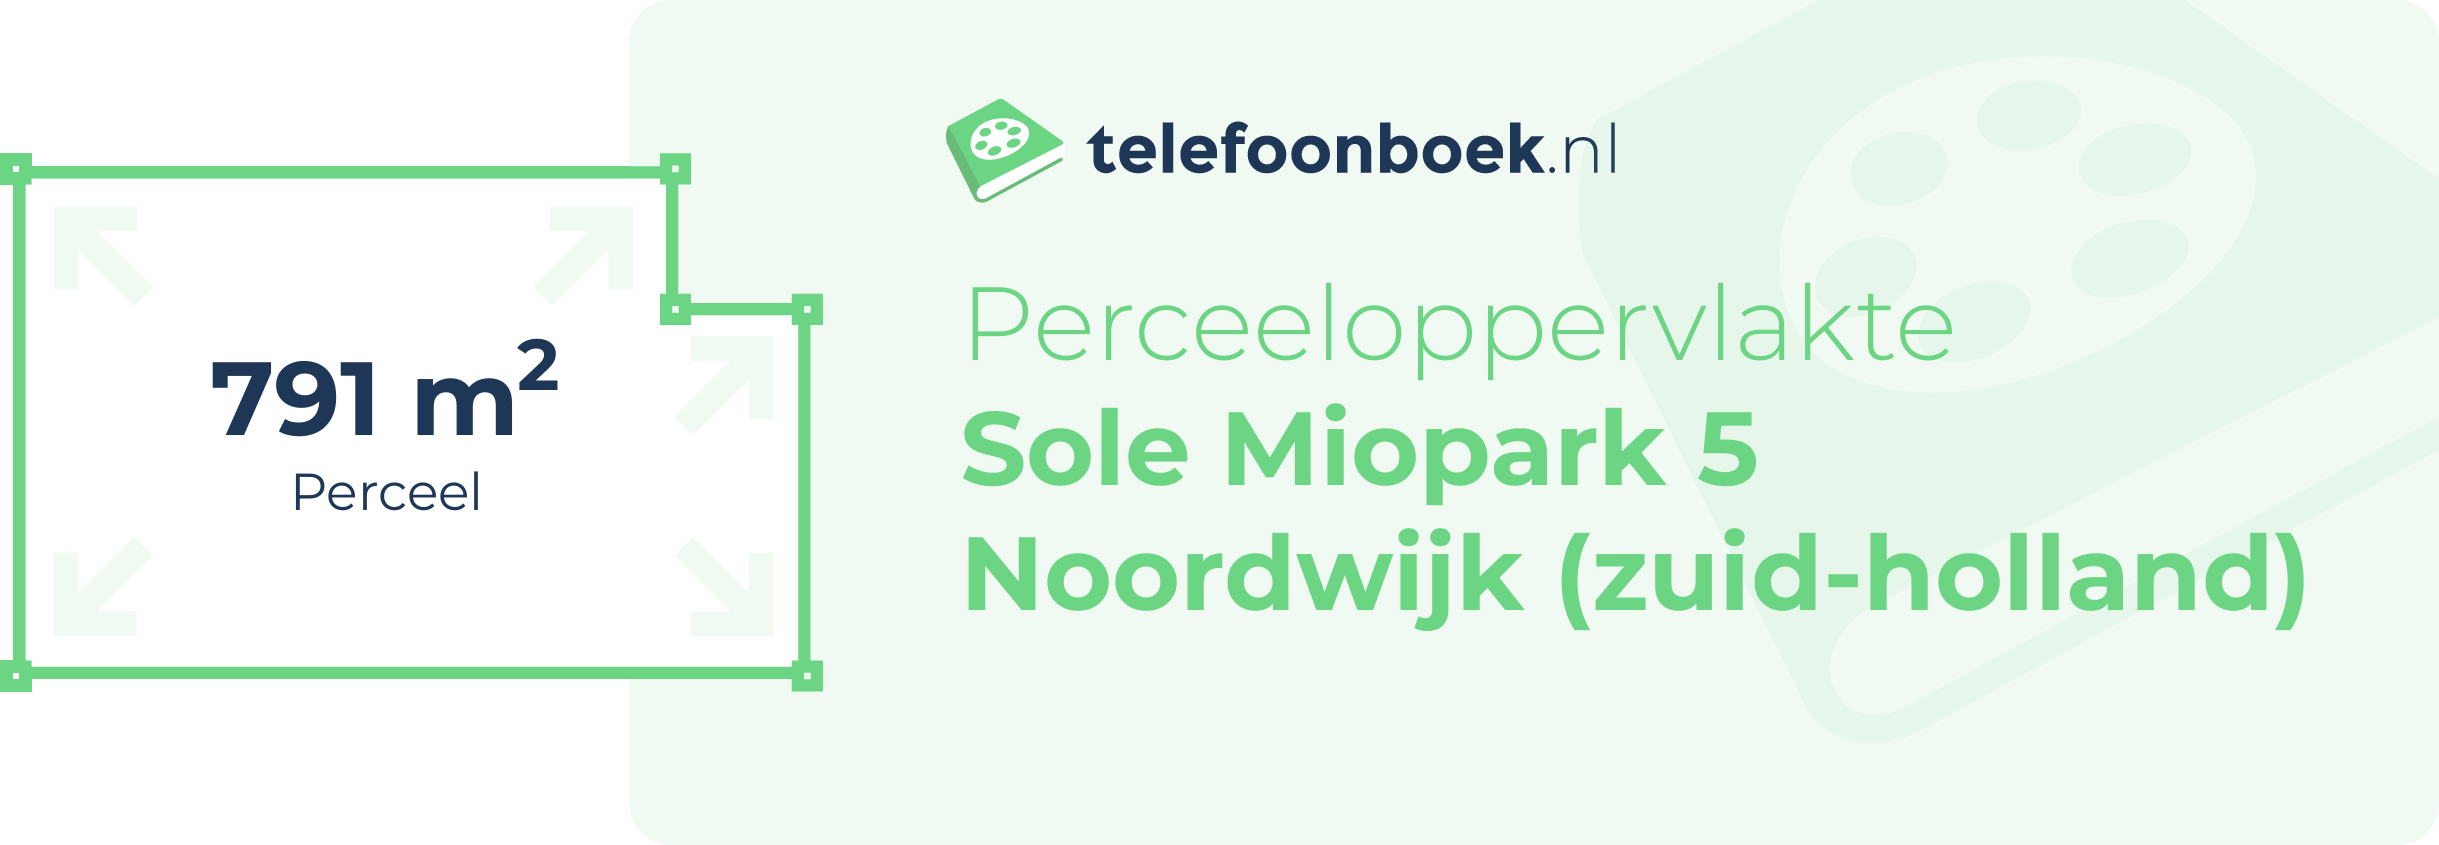 Perceeloppervlakte Sole Miopark 5 Noordwijk (Zuid-Holland)